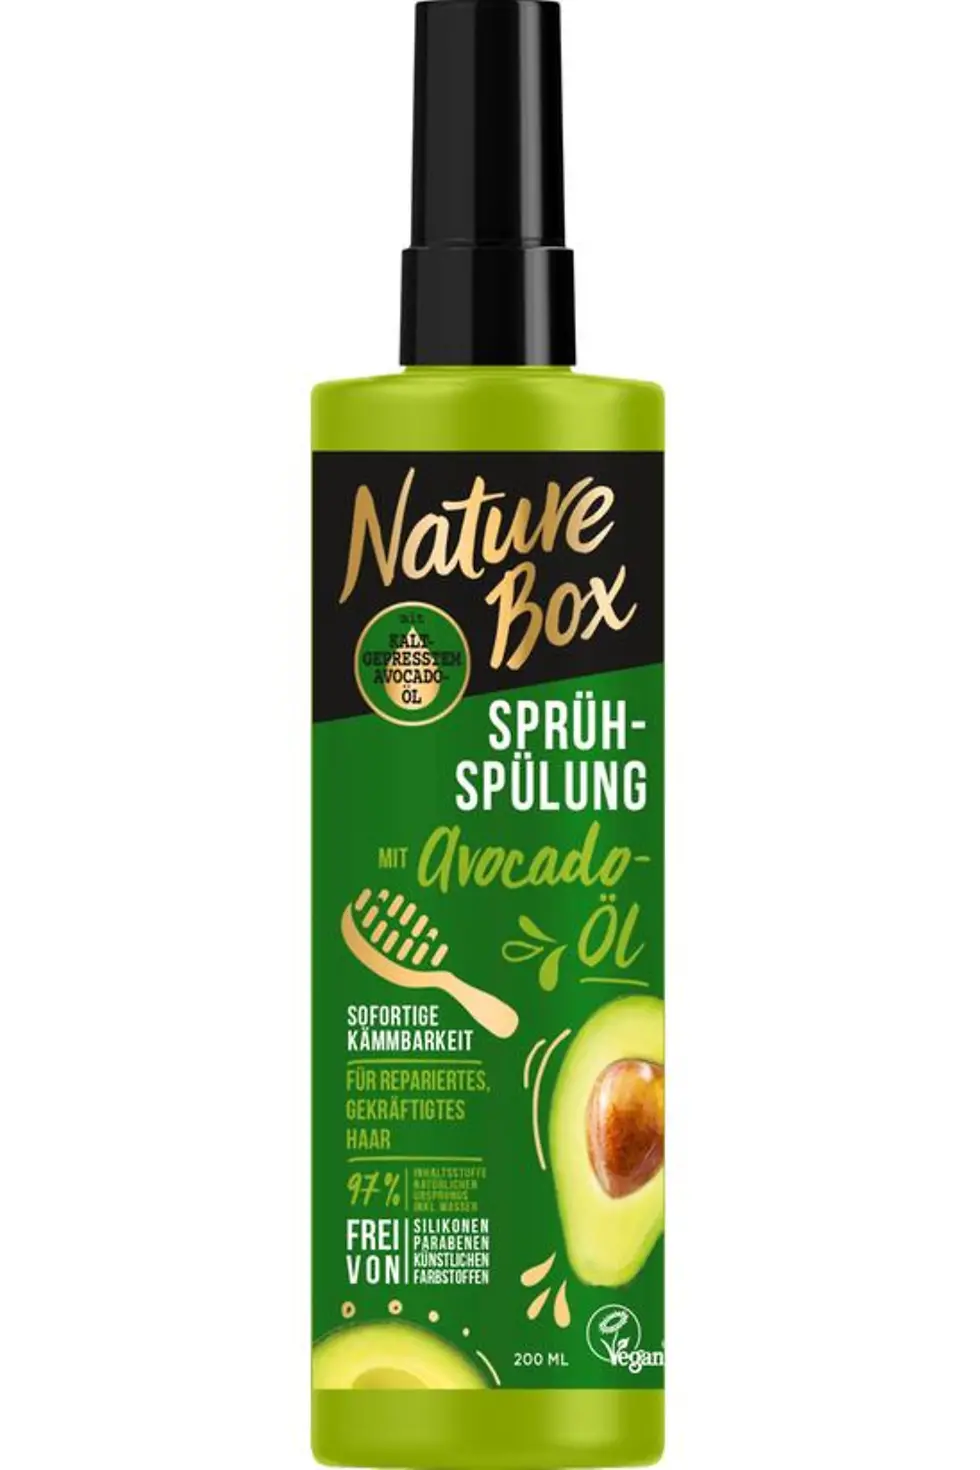 
Nature Box Sprüh-Spülung mit kaltgepresstem Avocado-Öl